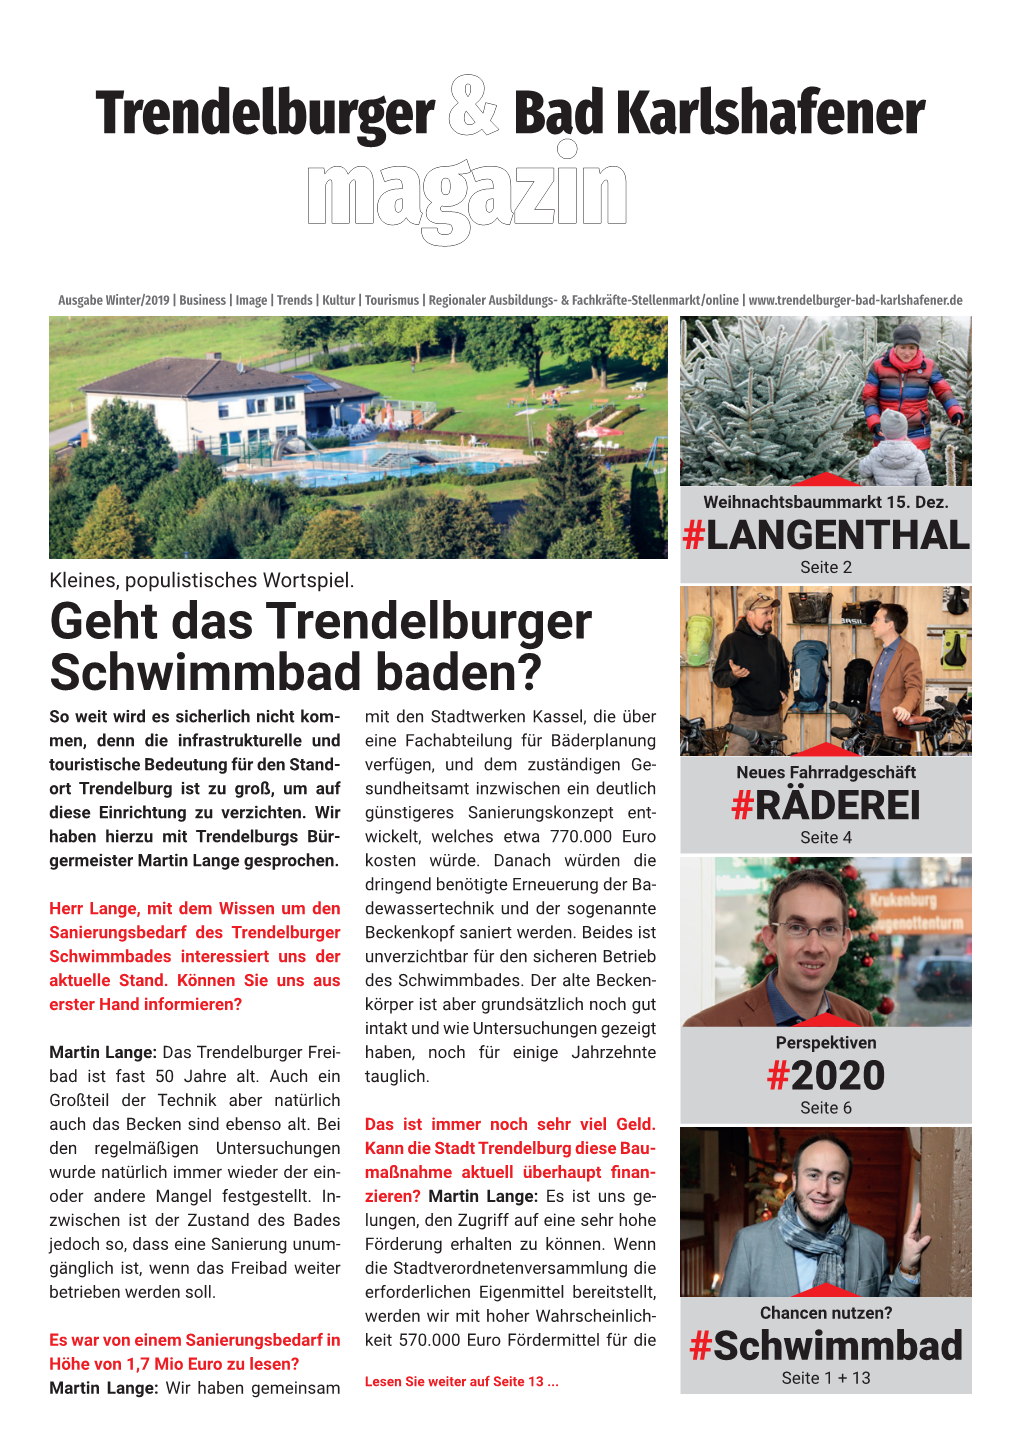 Trendelburger & Bad Karlshafener